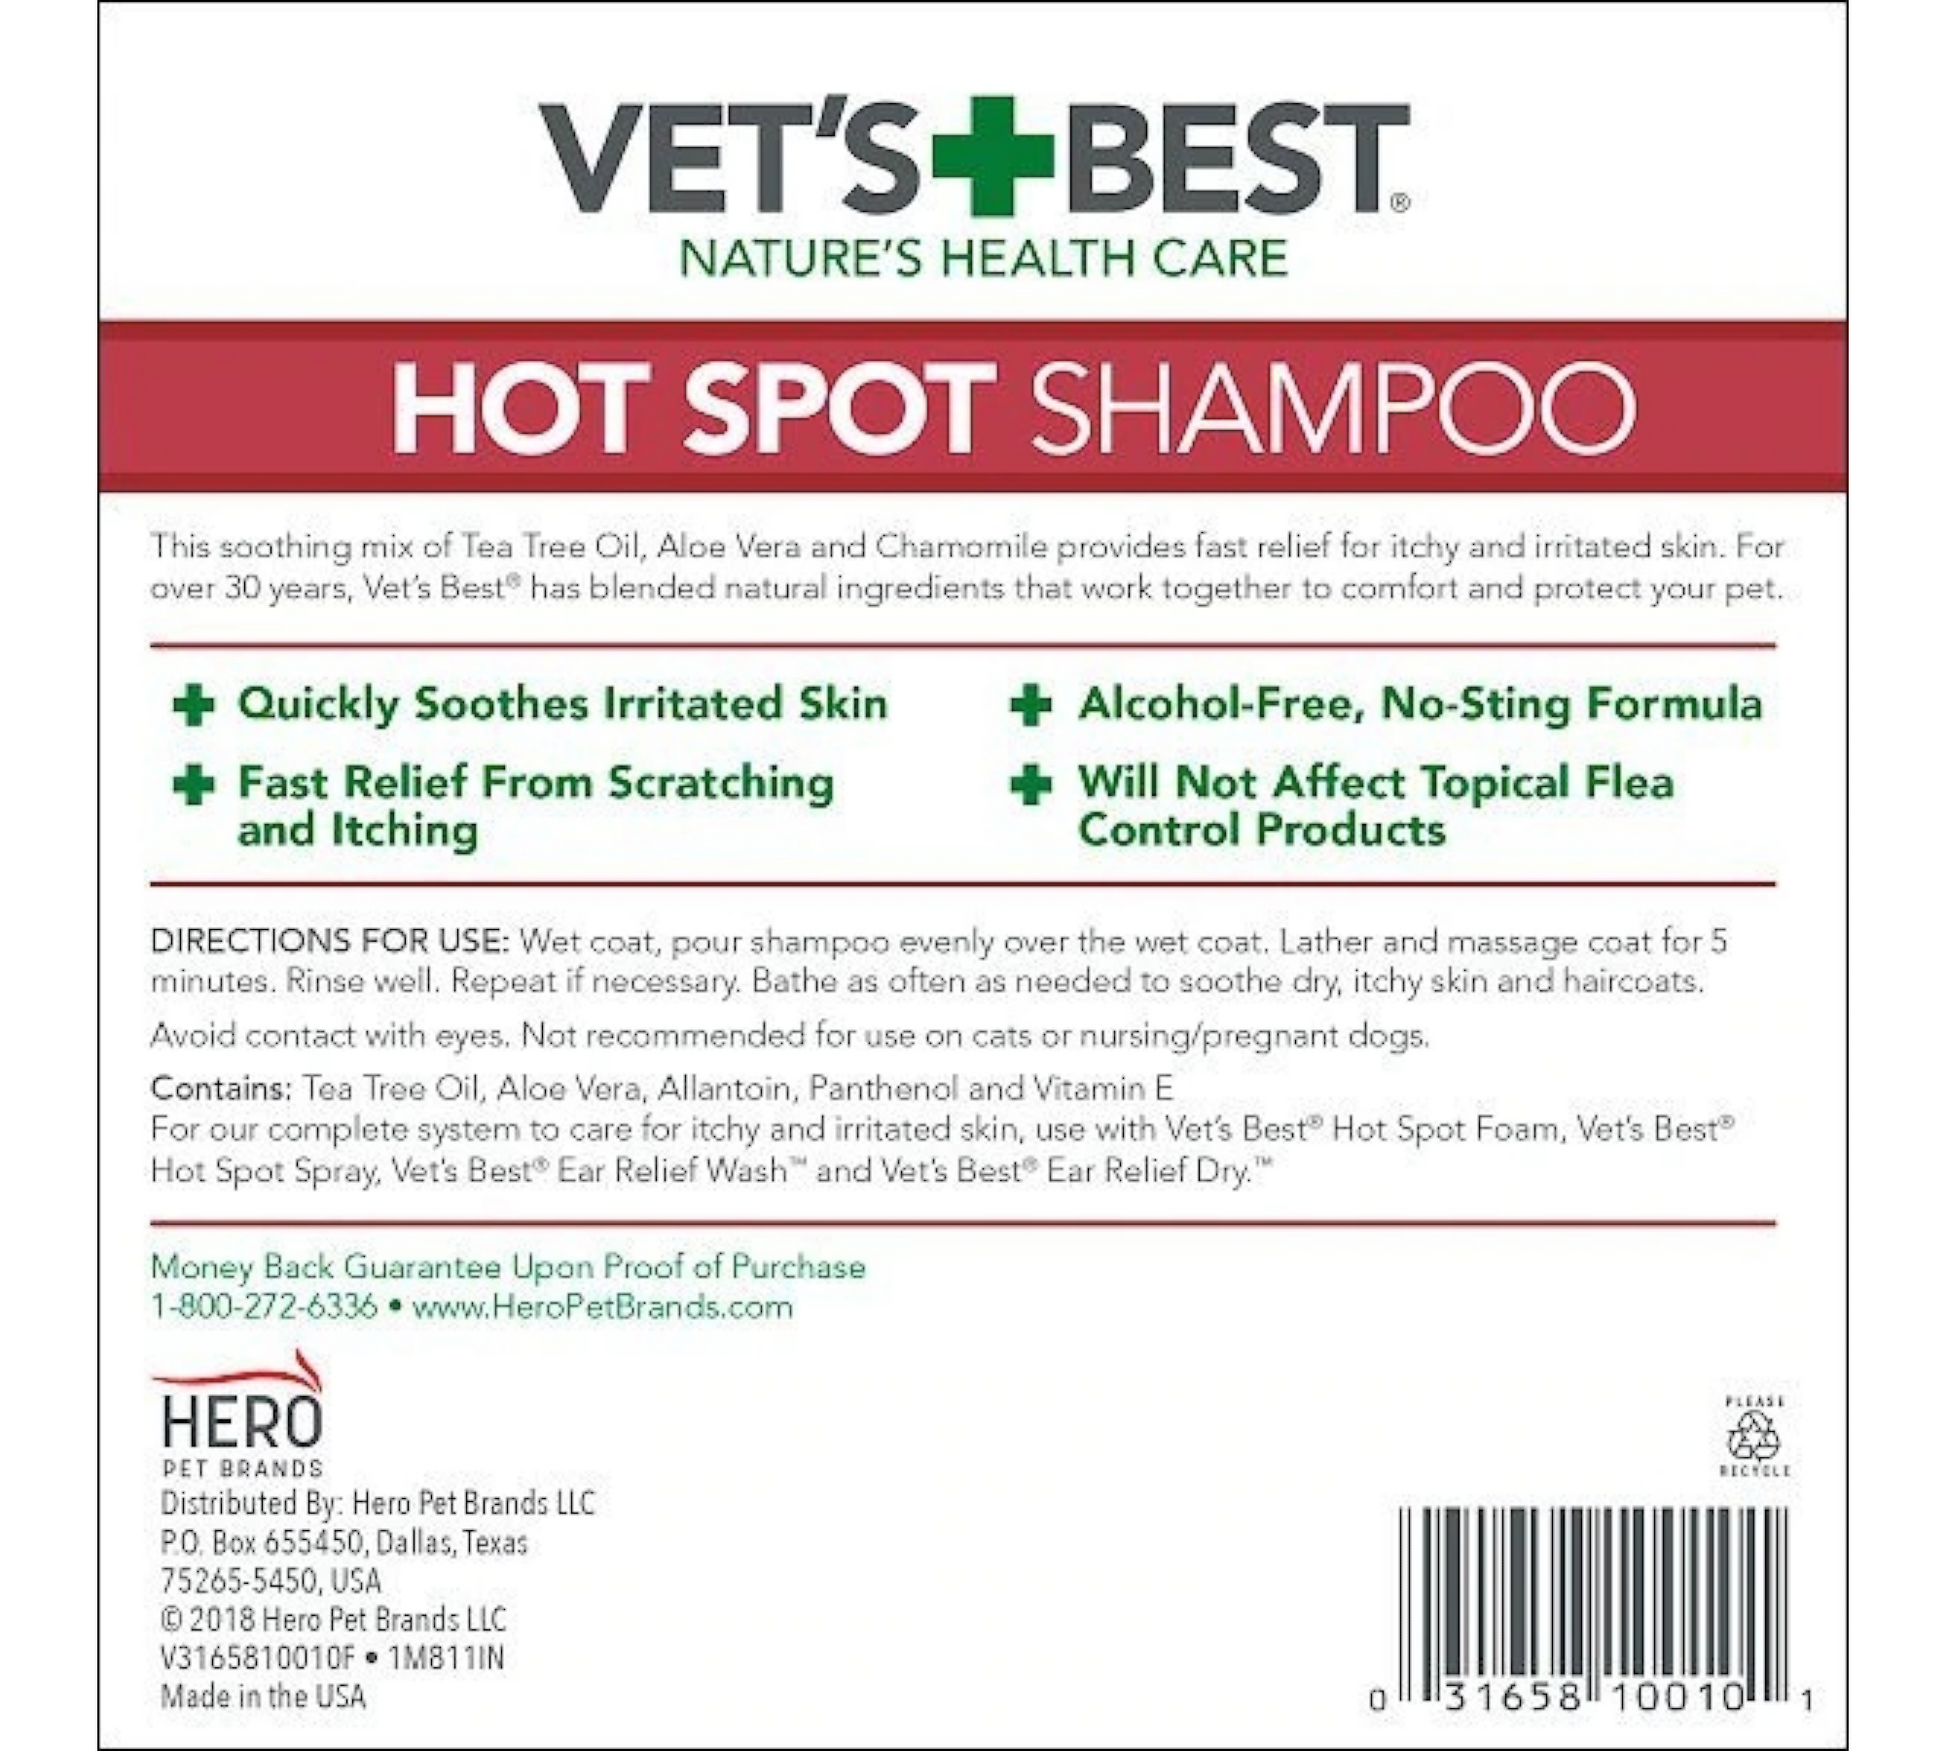 Canine's World Dog Shampoos Vet's Best Hot Spot Shampoo for Dogs, Vet's Best